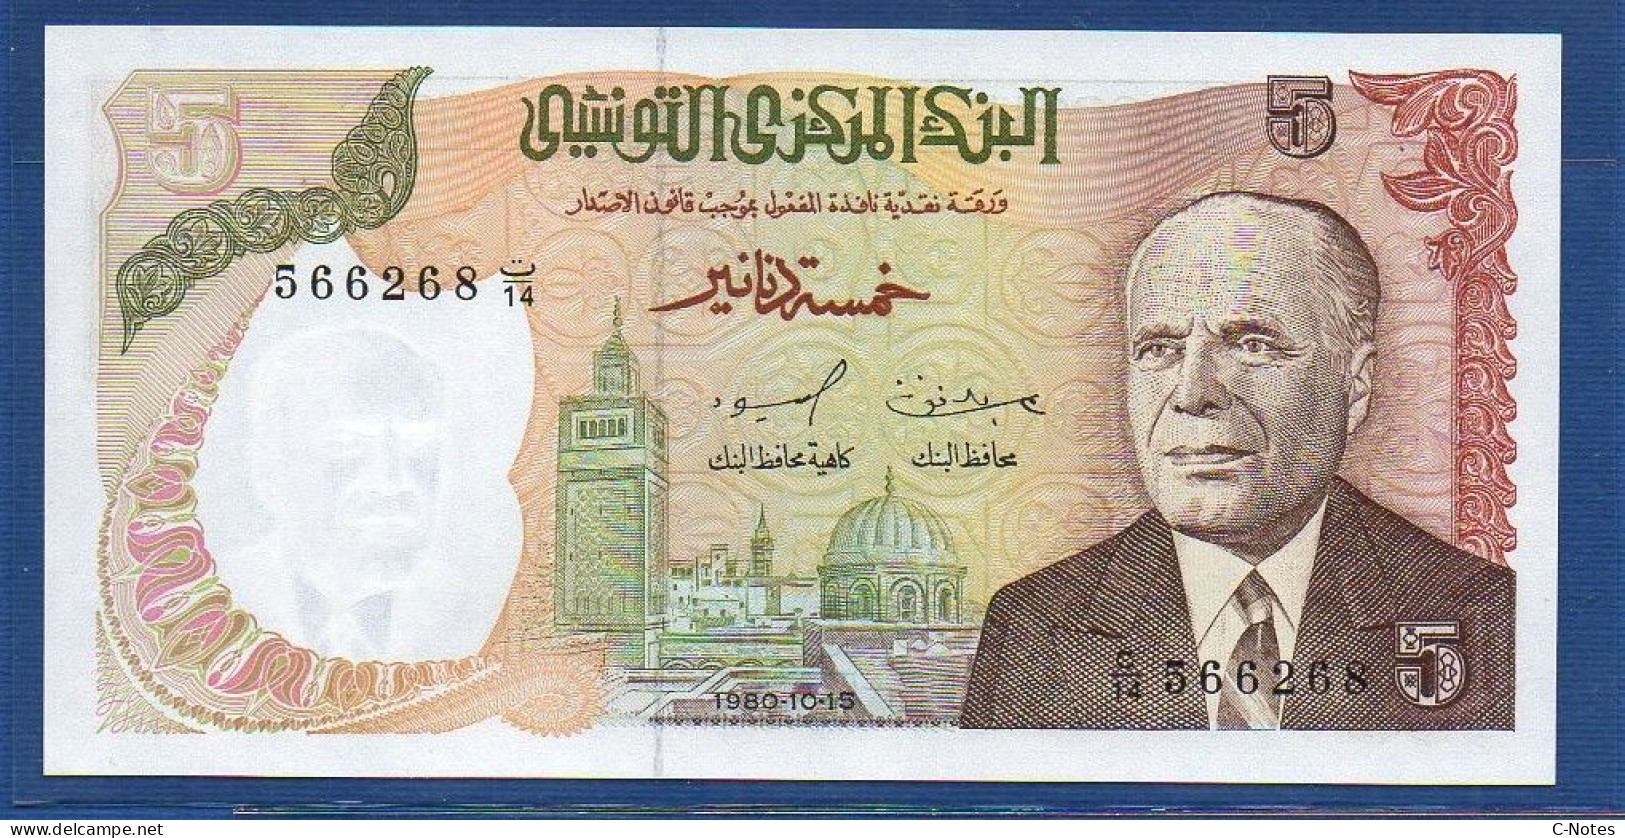 TUNISIA - P.75 – 5 Dinars 1980 UNC, S/n C/14 566268 - Tunisia